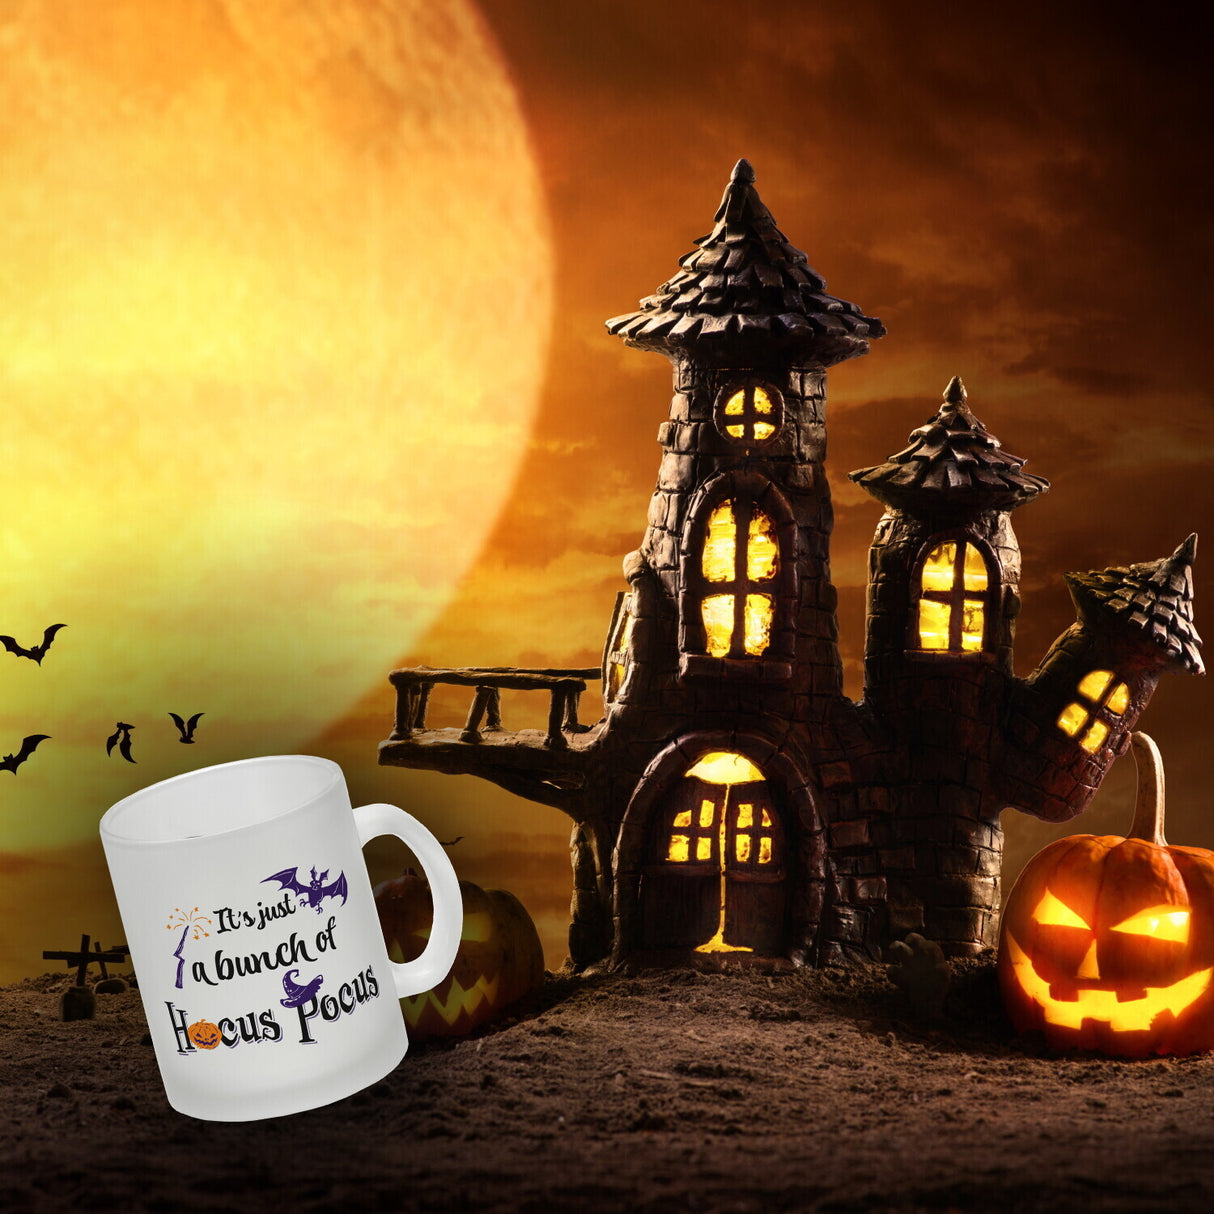 Kaffeebecher mit Halloween Motiv und Spruch - It's just a bunch of Hocus Pocus -